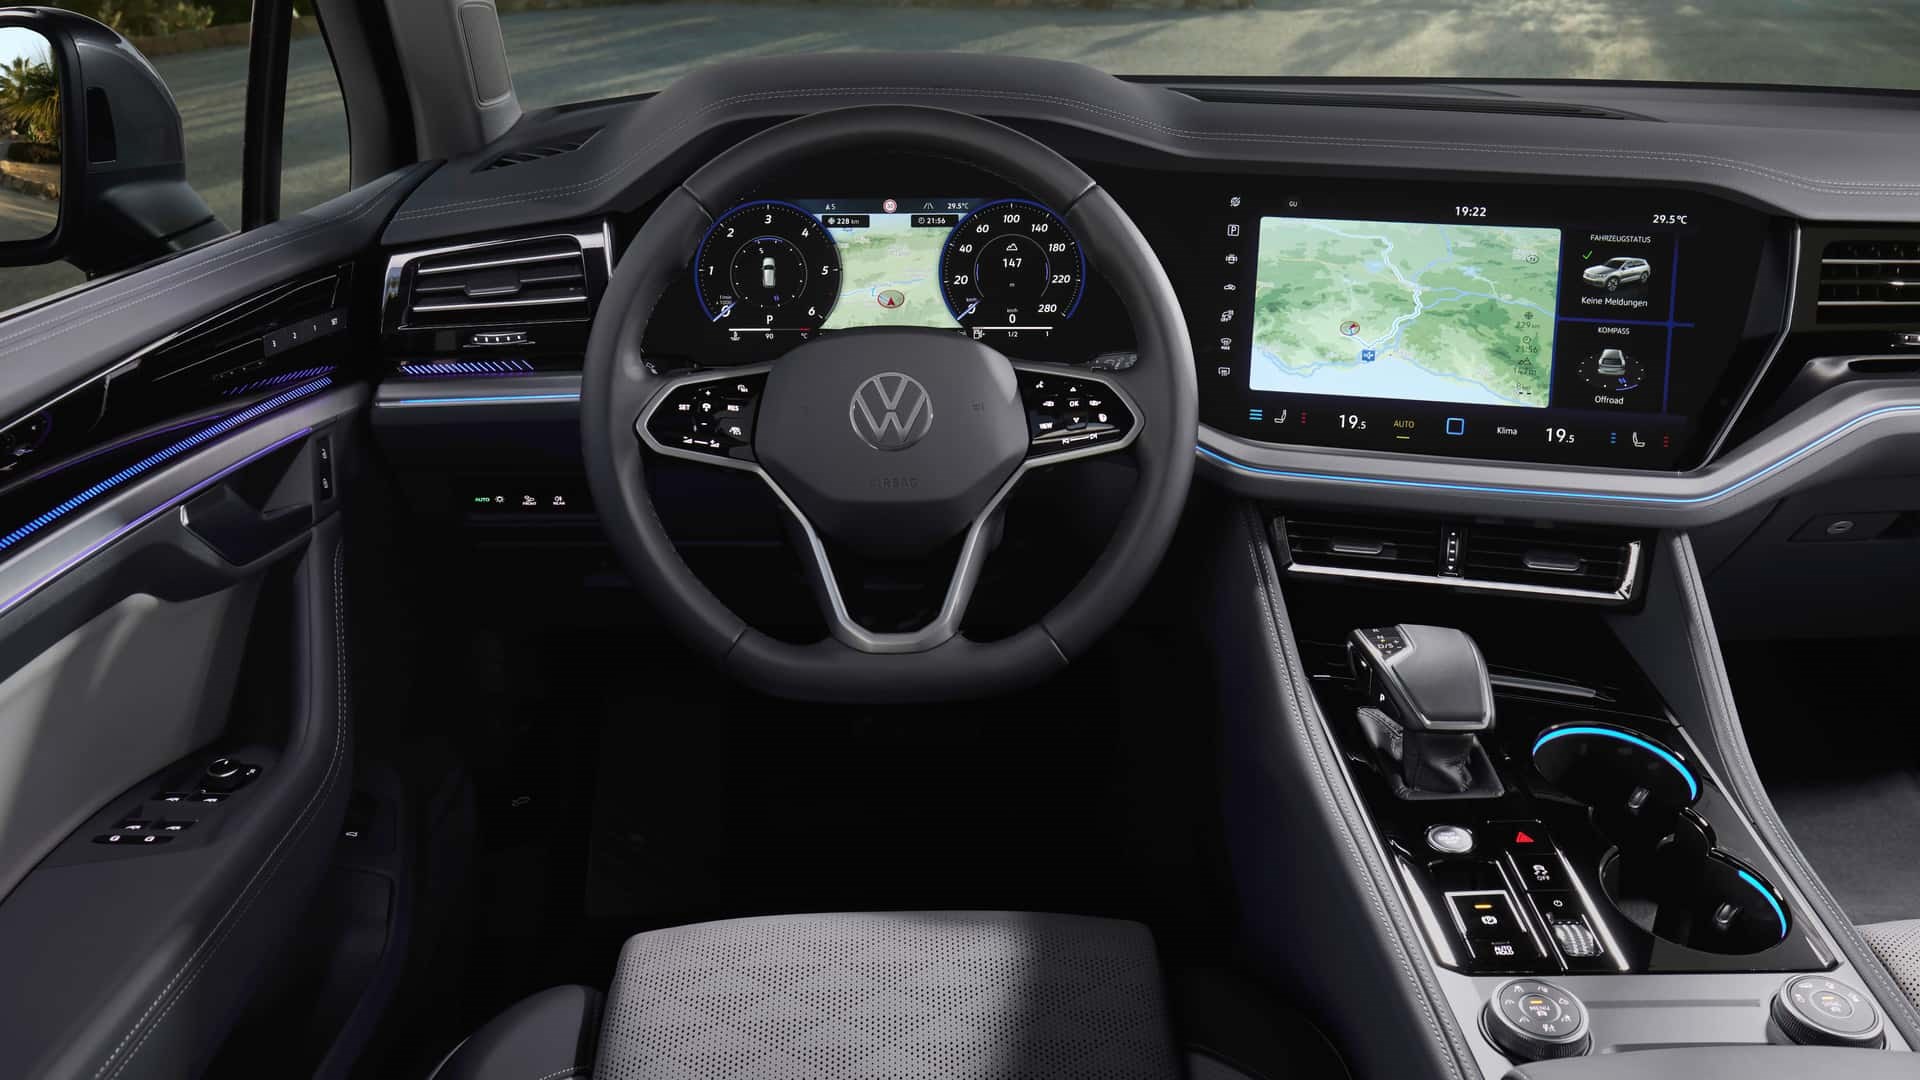 Yeni Volkswagen Touareg tanıtıldı: İşte tasarımı ve özellikleri